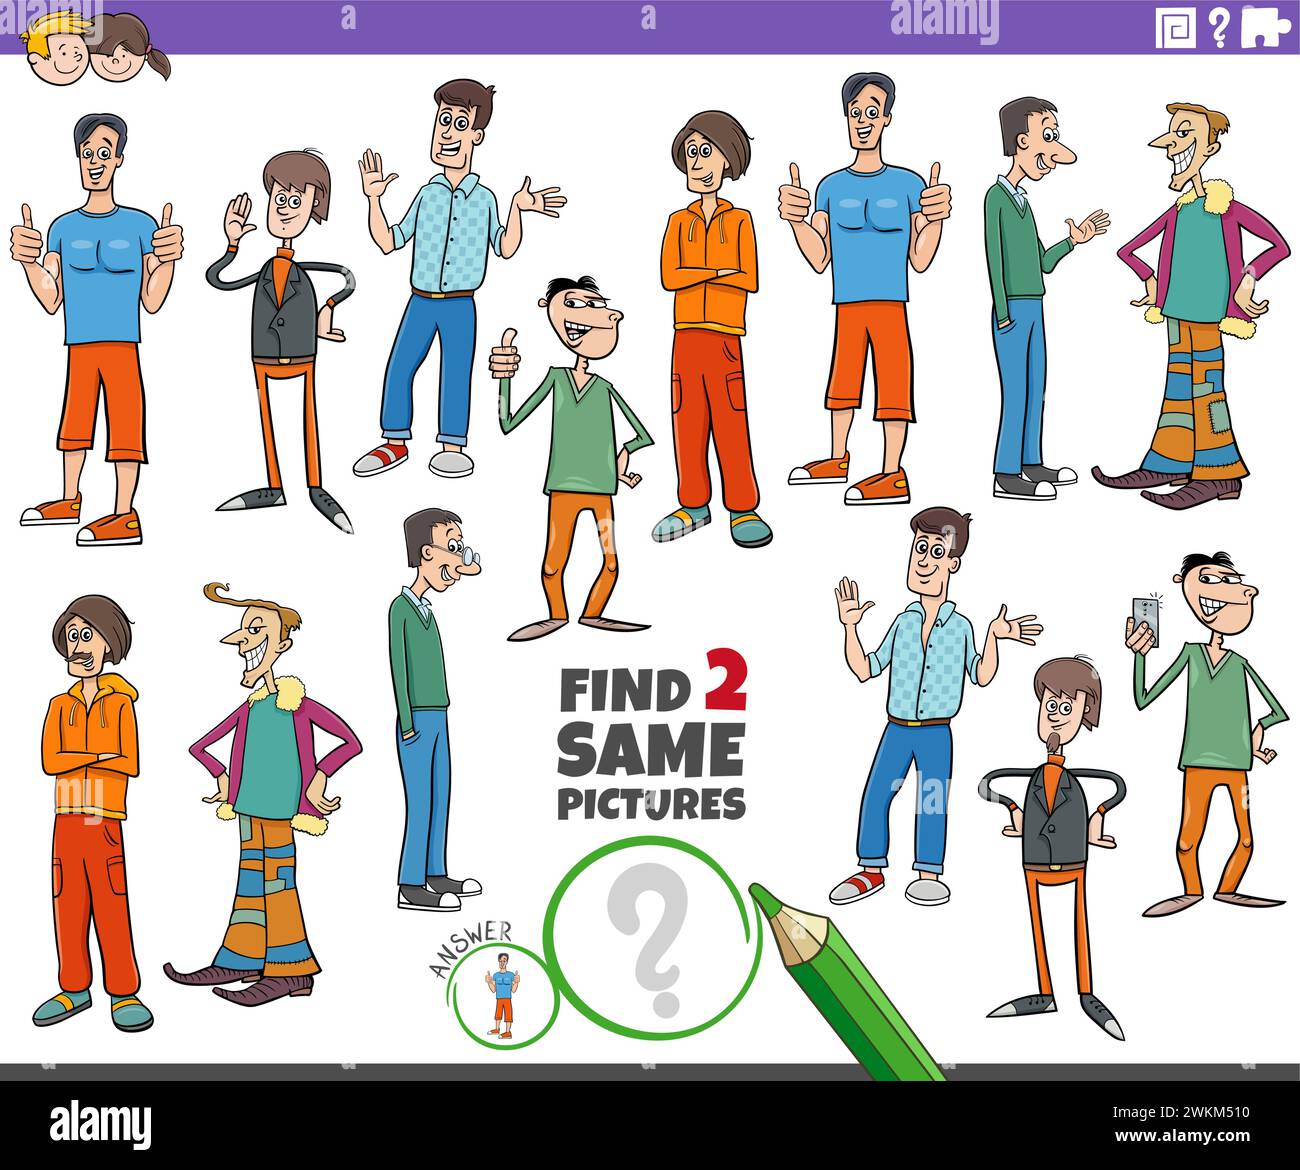 Illustration de dessin animé de trouver deux mêmes images jeu éducatif avec des gars ou des personnages de jeunes hommes Illustration de Vecteur